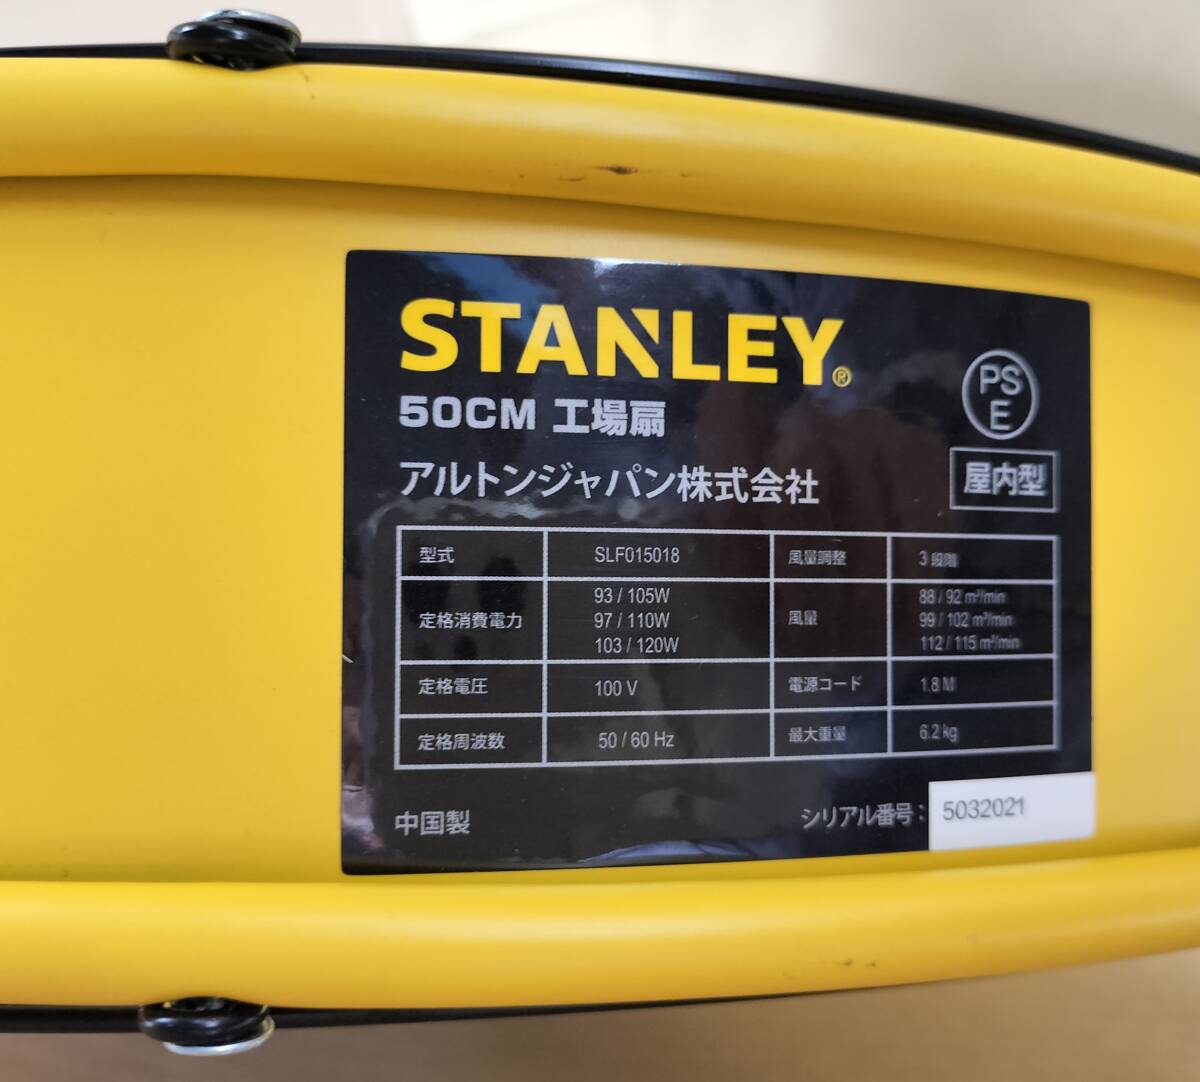 50cm factory fan electric fan unused goods translation have 